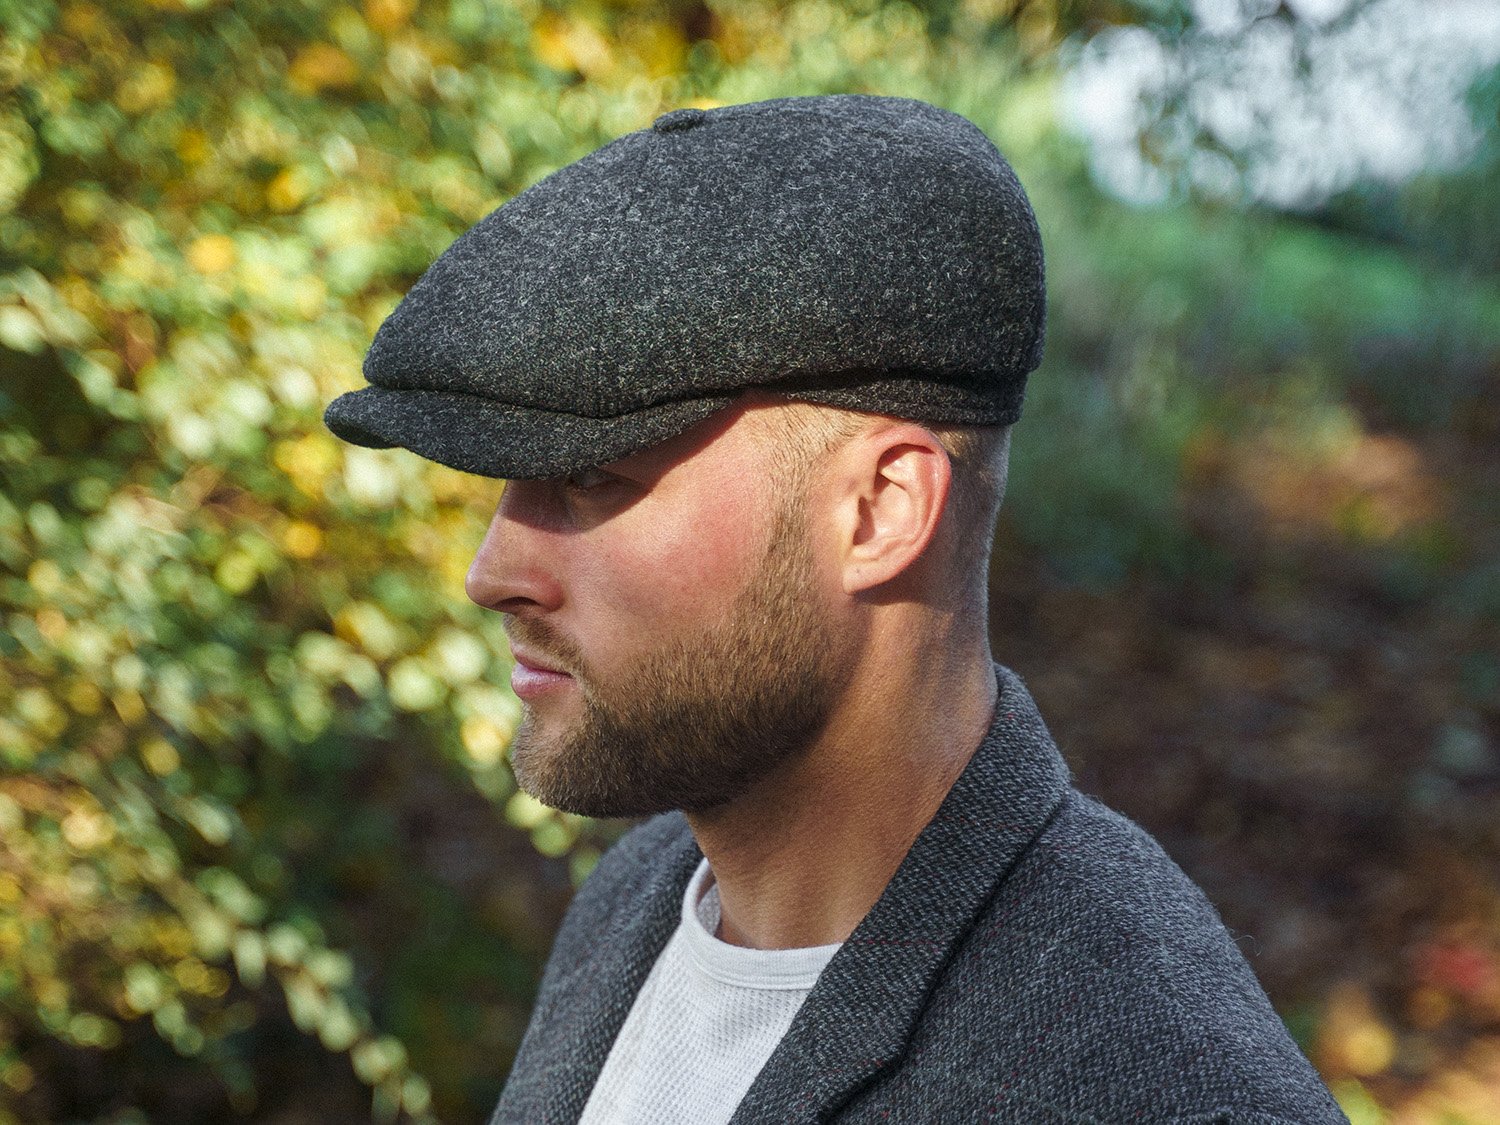 fashion cotton beret classic retro cap newsboy hat men caps general outdoor  sports sunscreen cap men Accessories